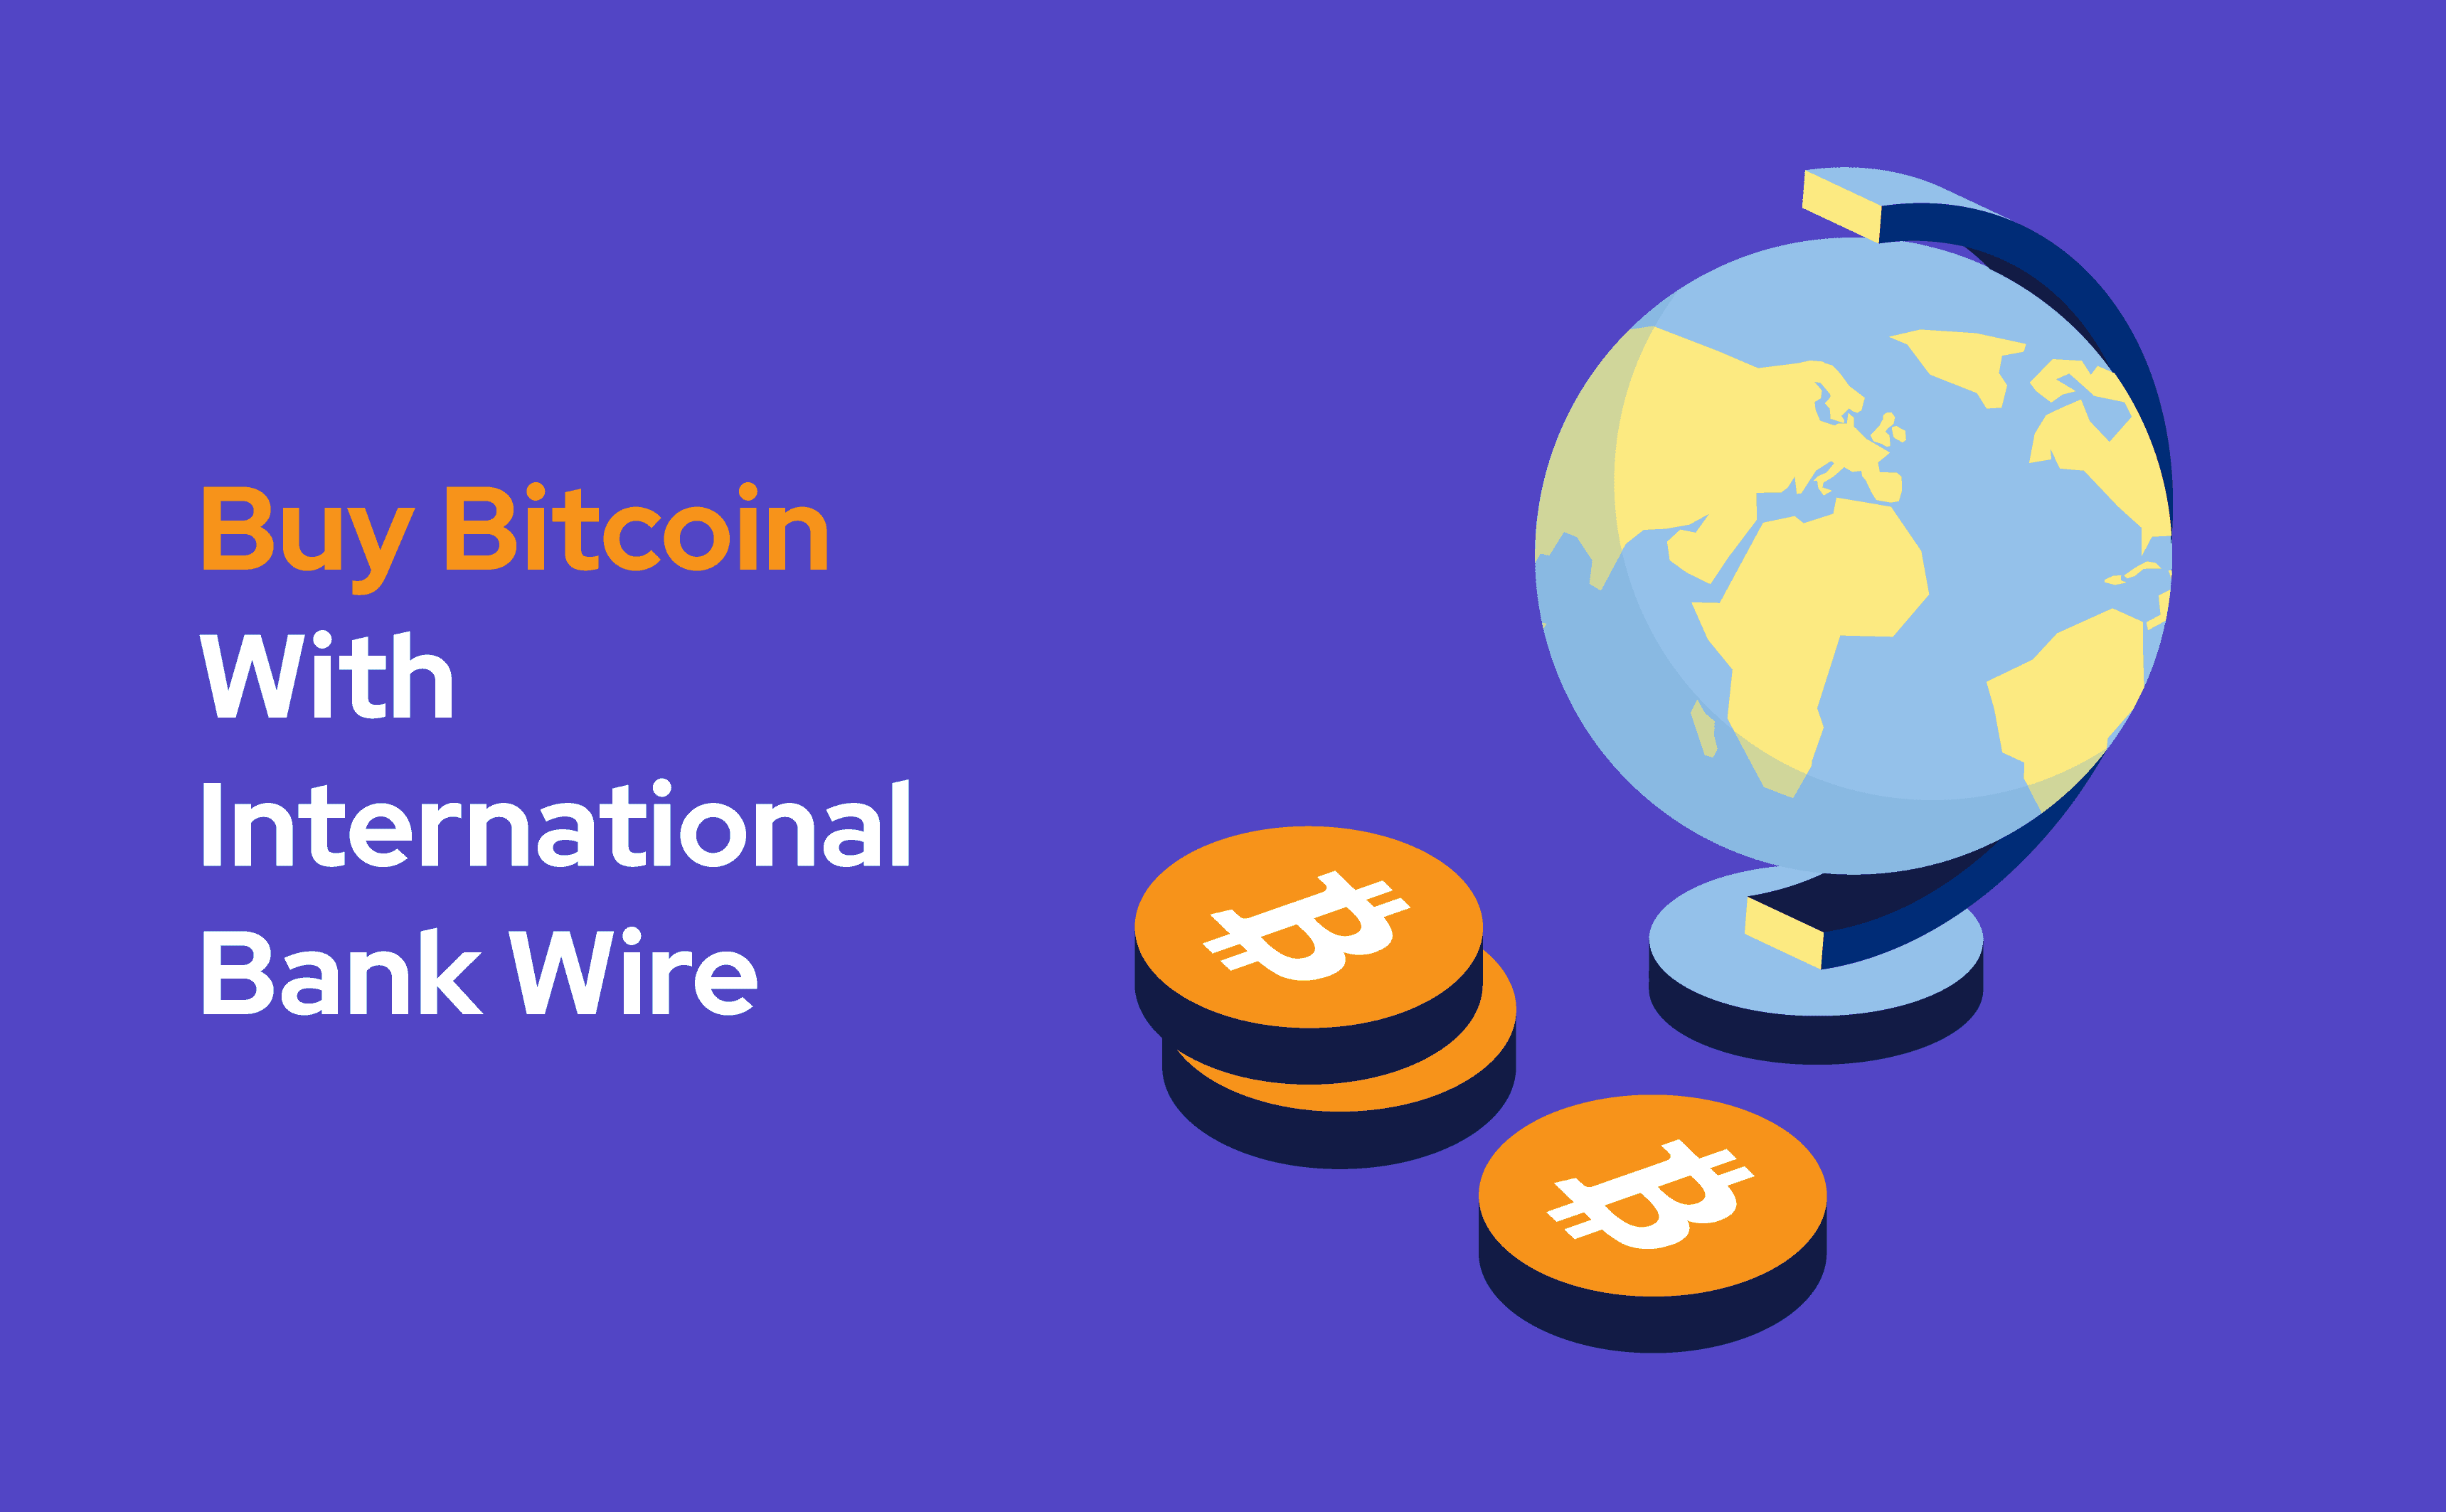 En esta publicación, explicamos cómo comprar Bitcoin con la opción de transferencia bancaria internacional.